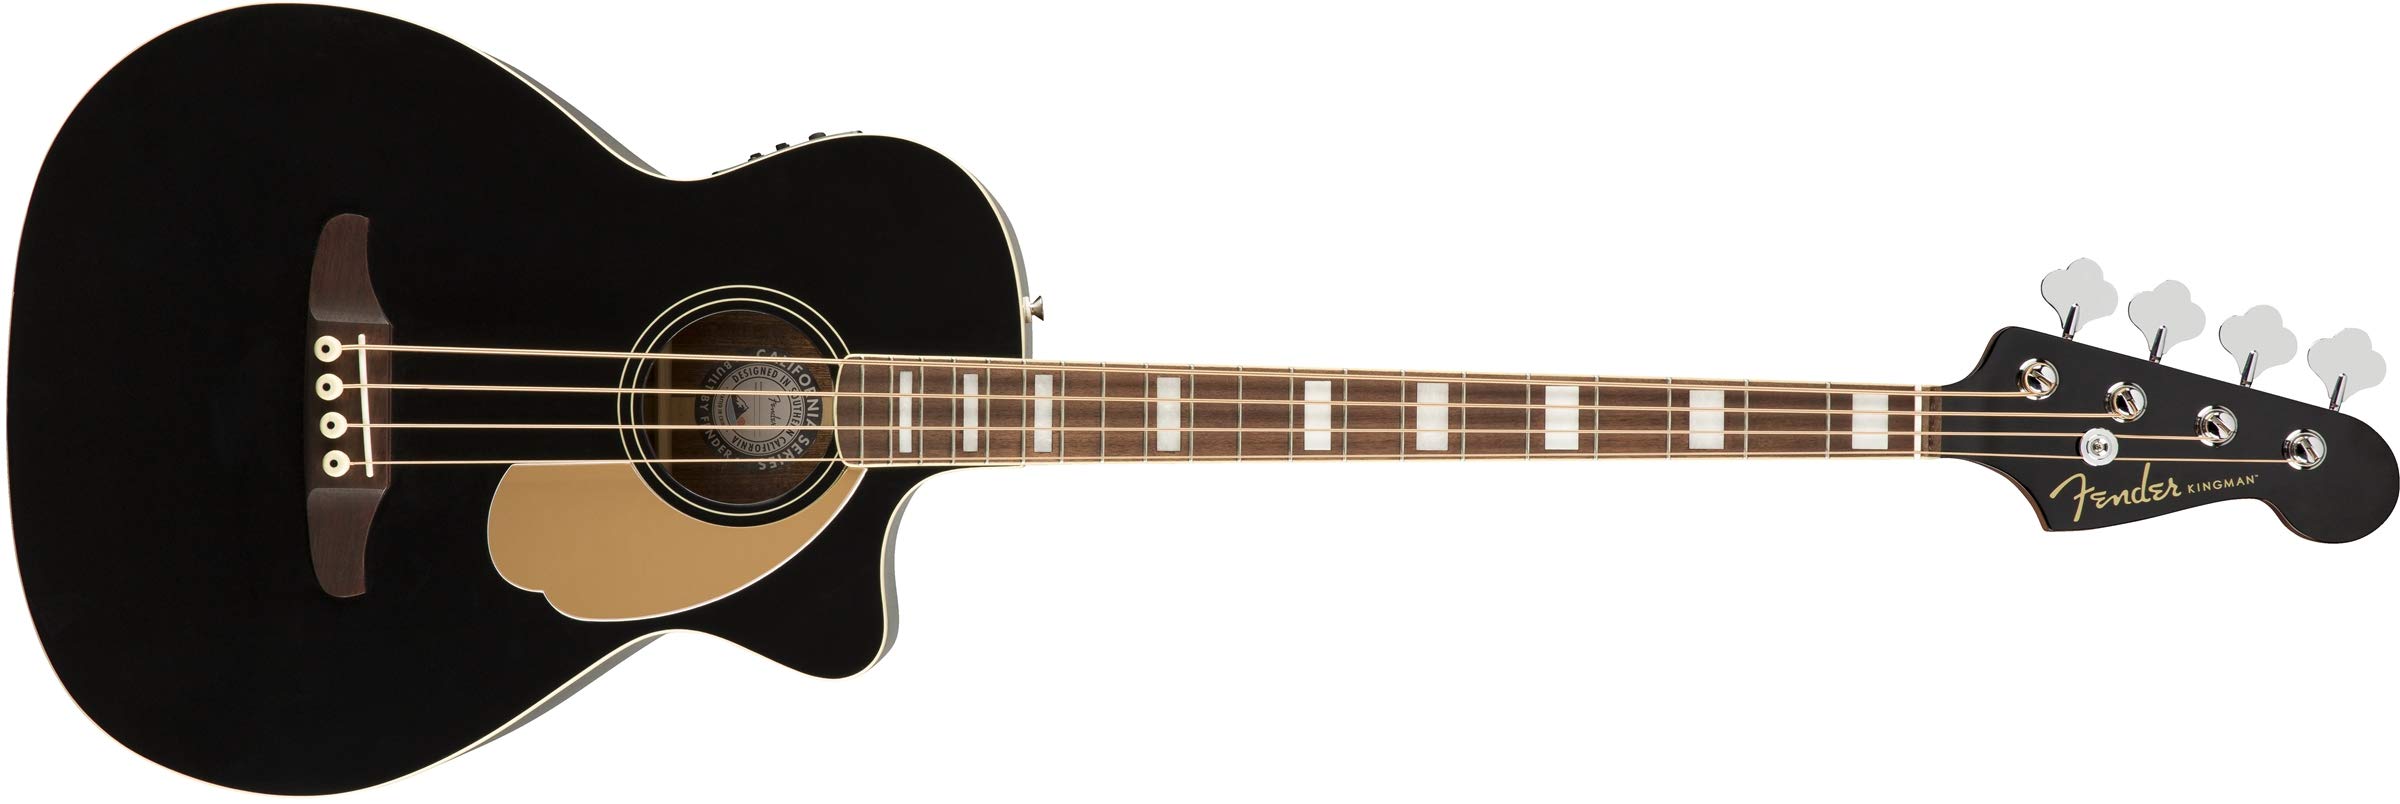 Fender किंगमैन ध्वनिक बास गिटार (V2) - काला - बैग के सा...